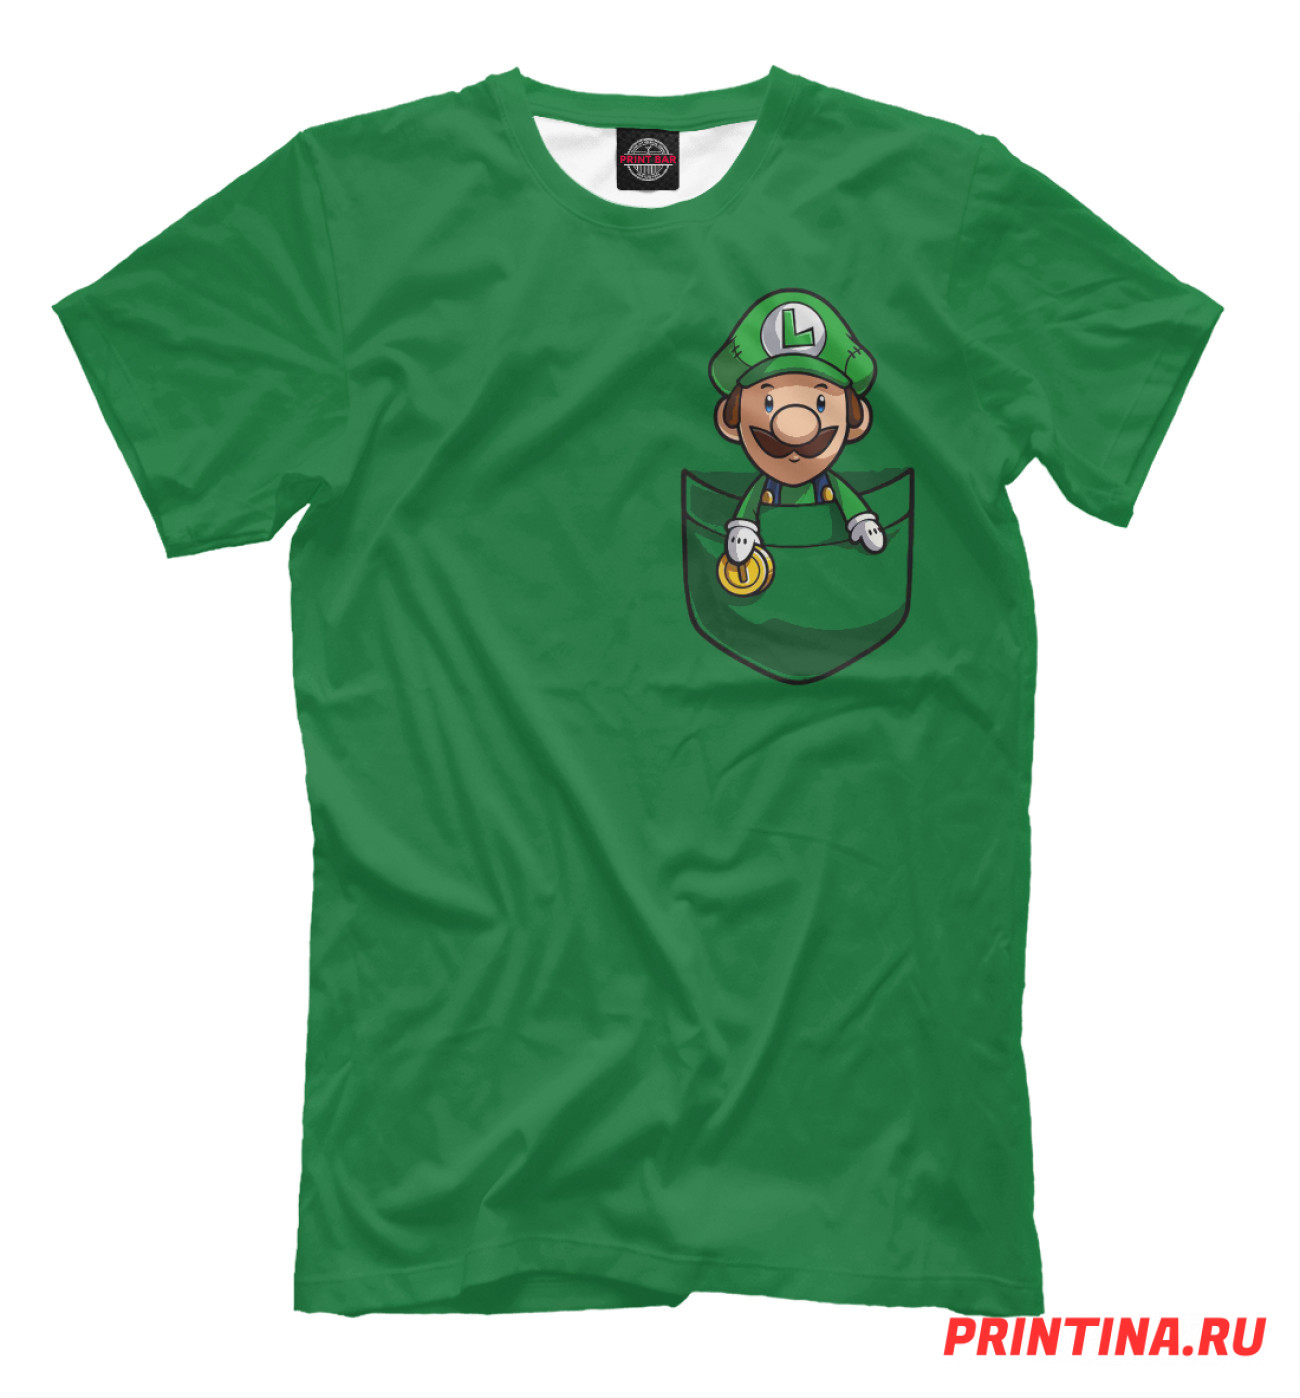 Мужская Футболка Марио в кармане, артикул: DEN-493816-fut-2